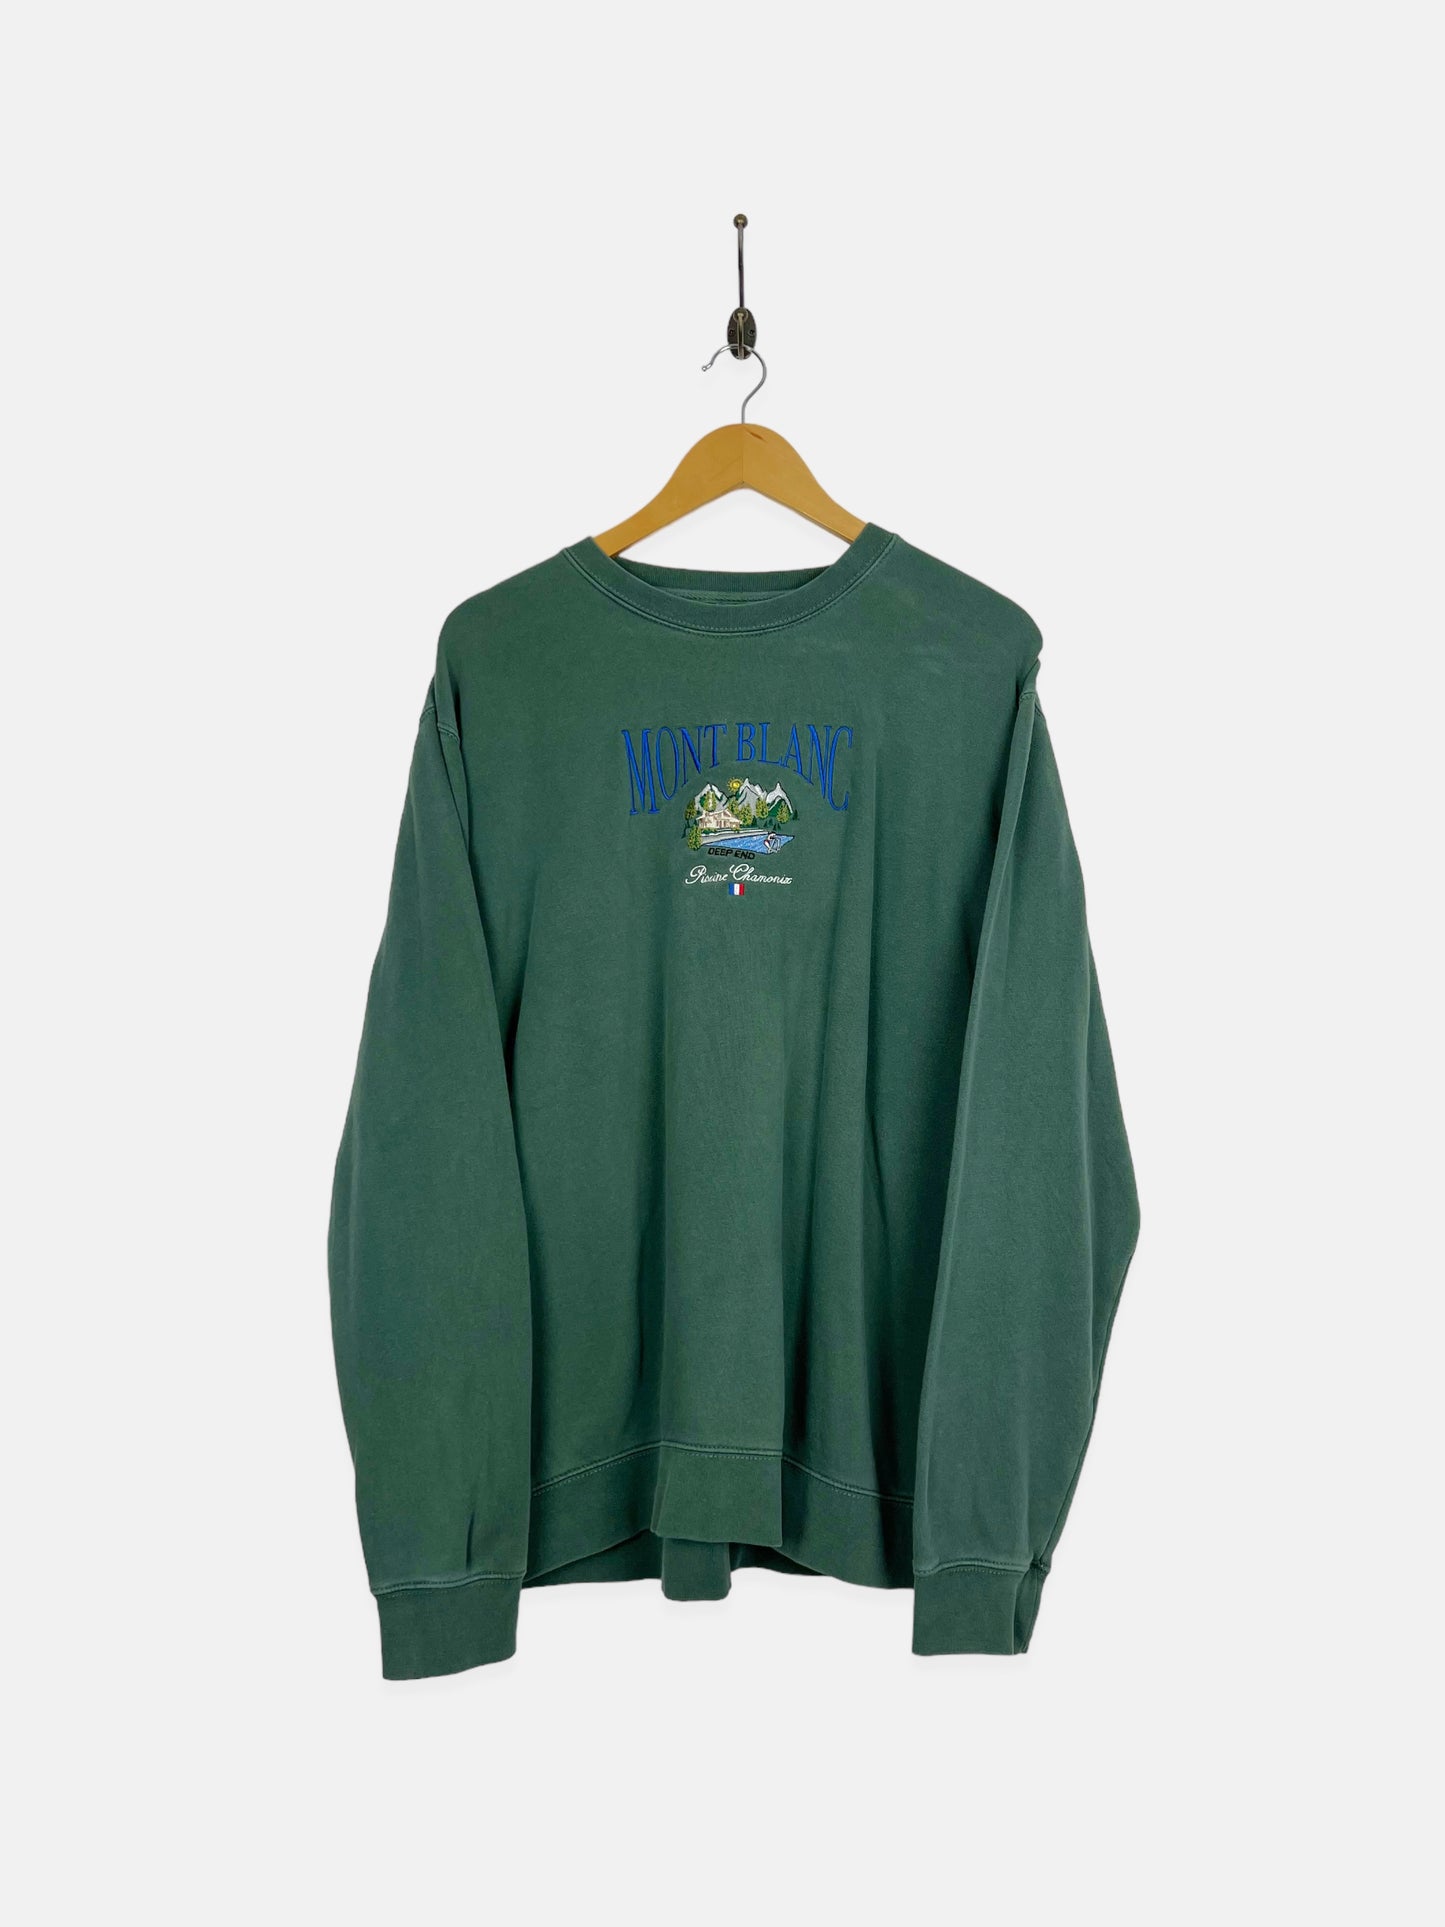 90's Mont Blanc Embroidered Vintage Lightweight Sweatshirt Size L